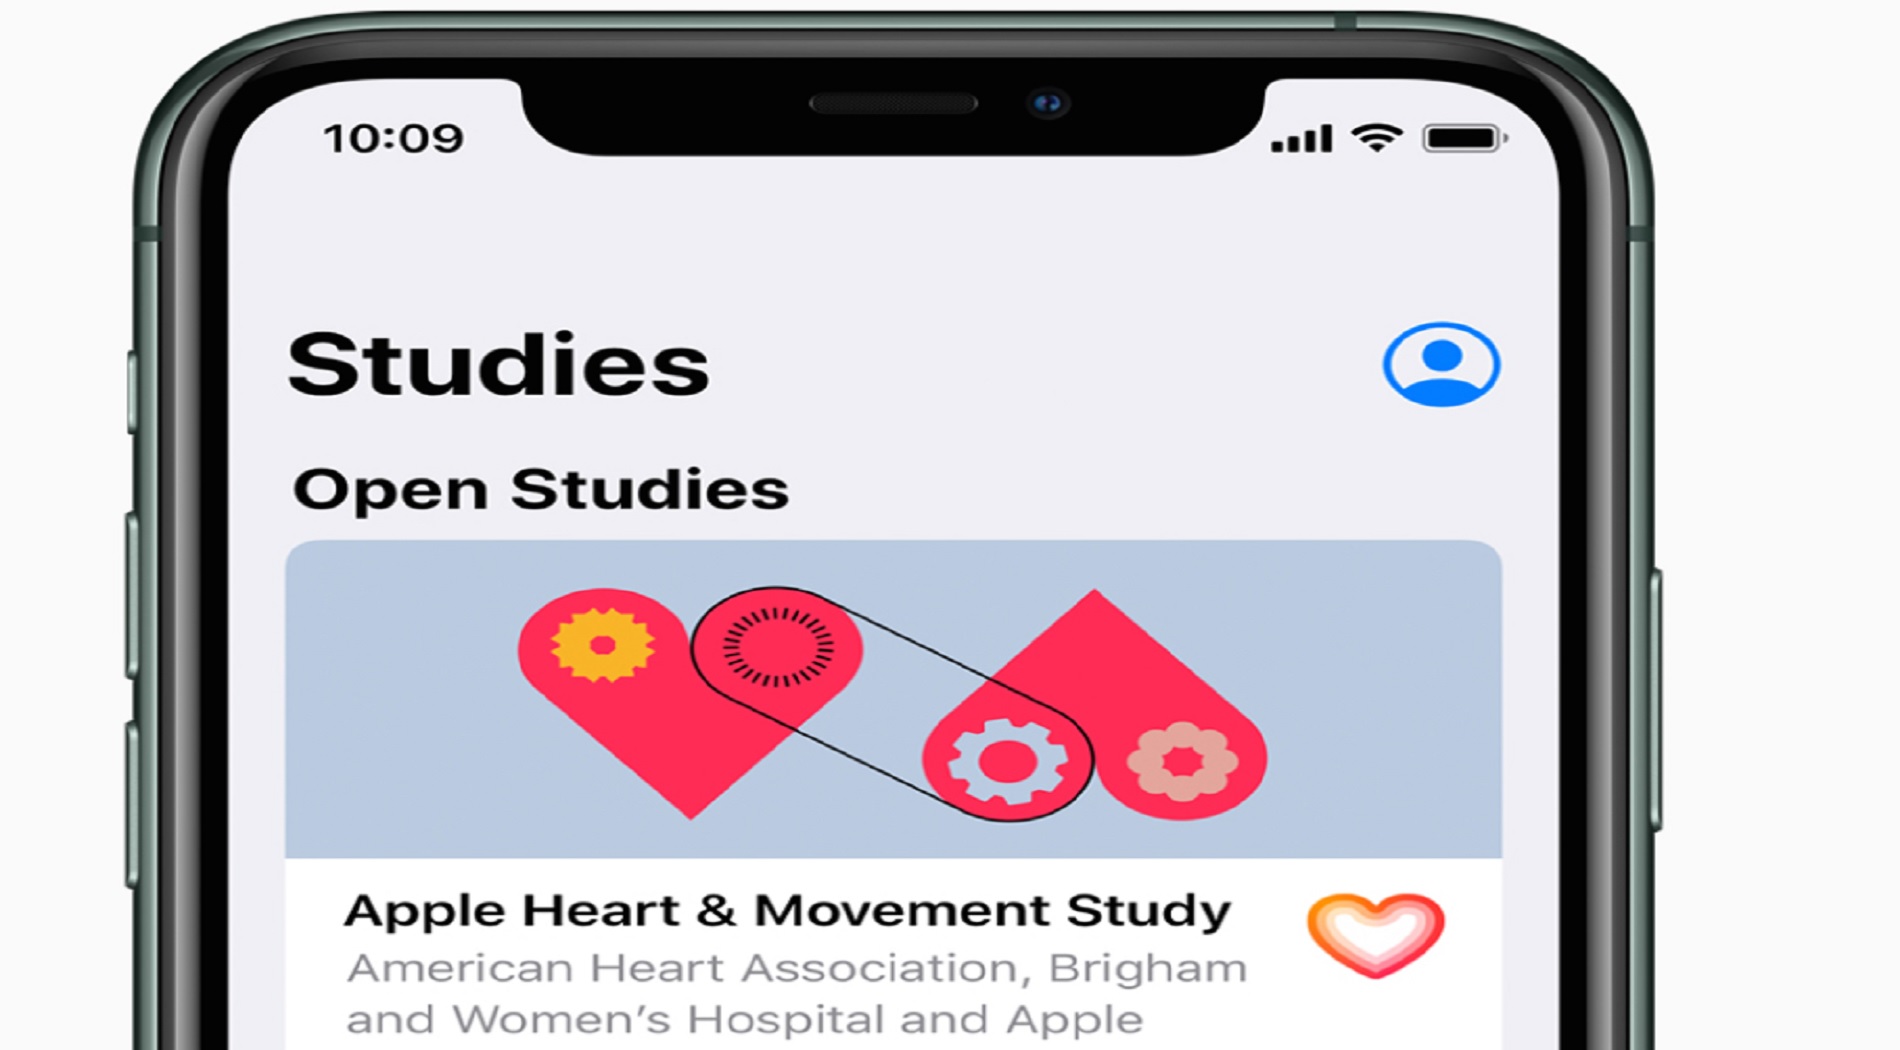 Η Apple ανακοινώνει τρεις πρωτοποριακές μελέτες για την υγεία